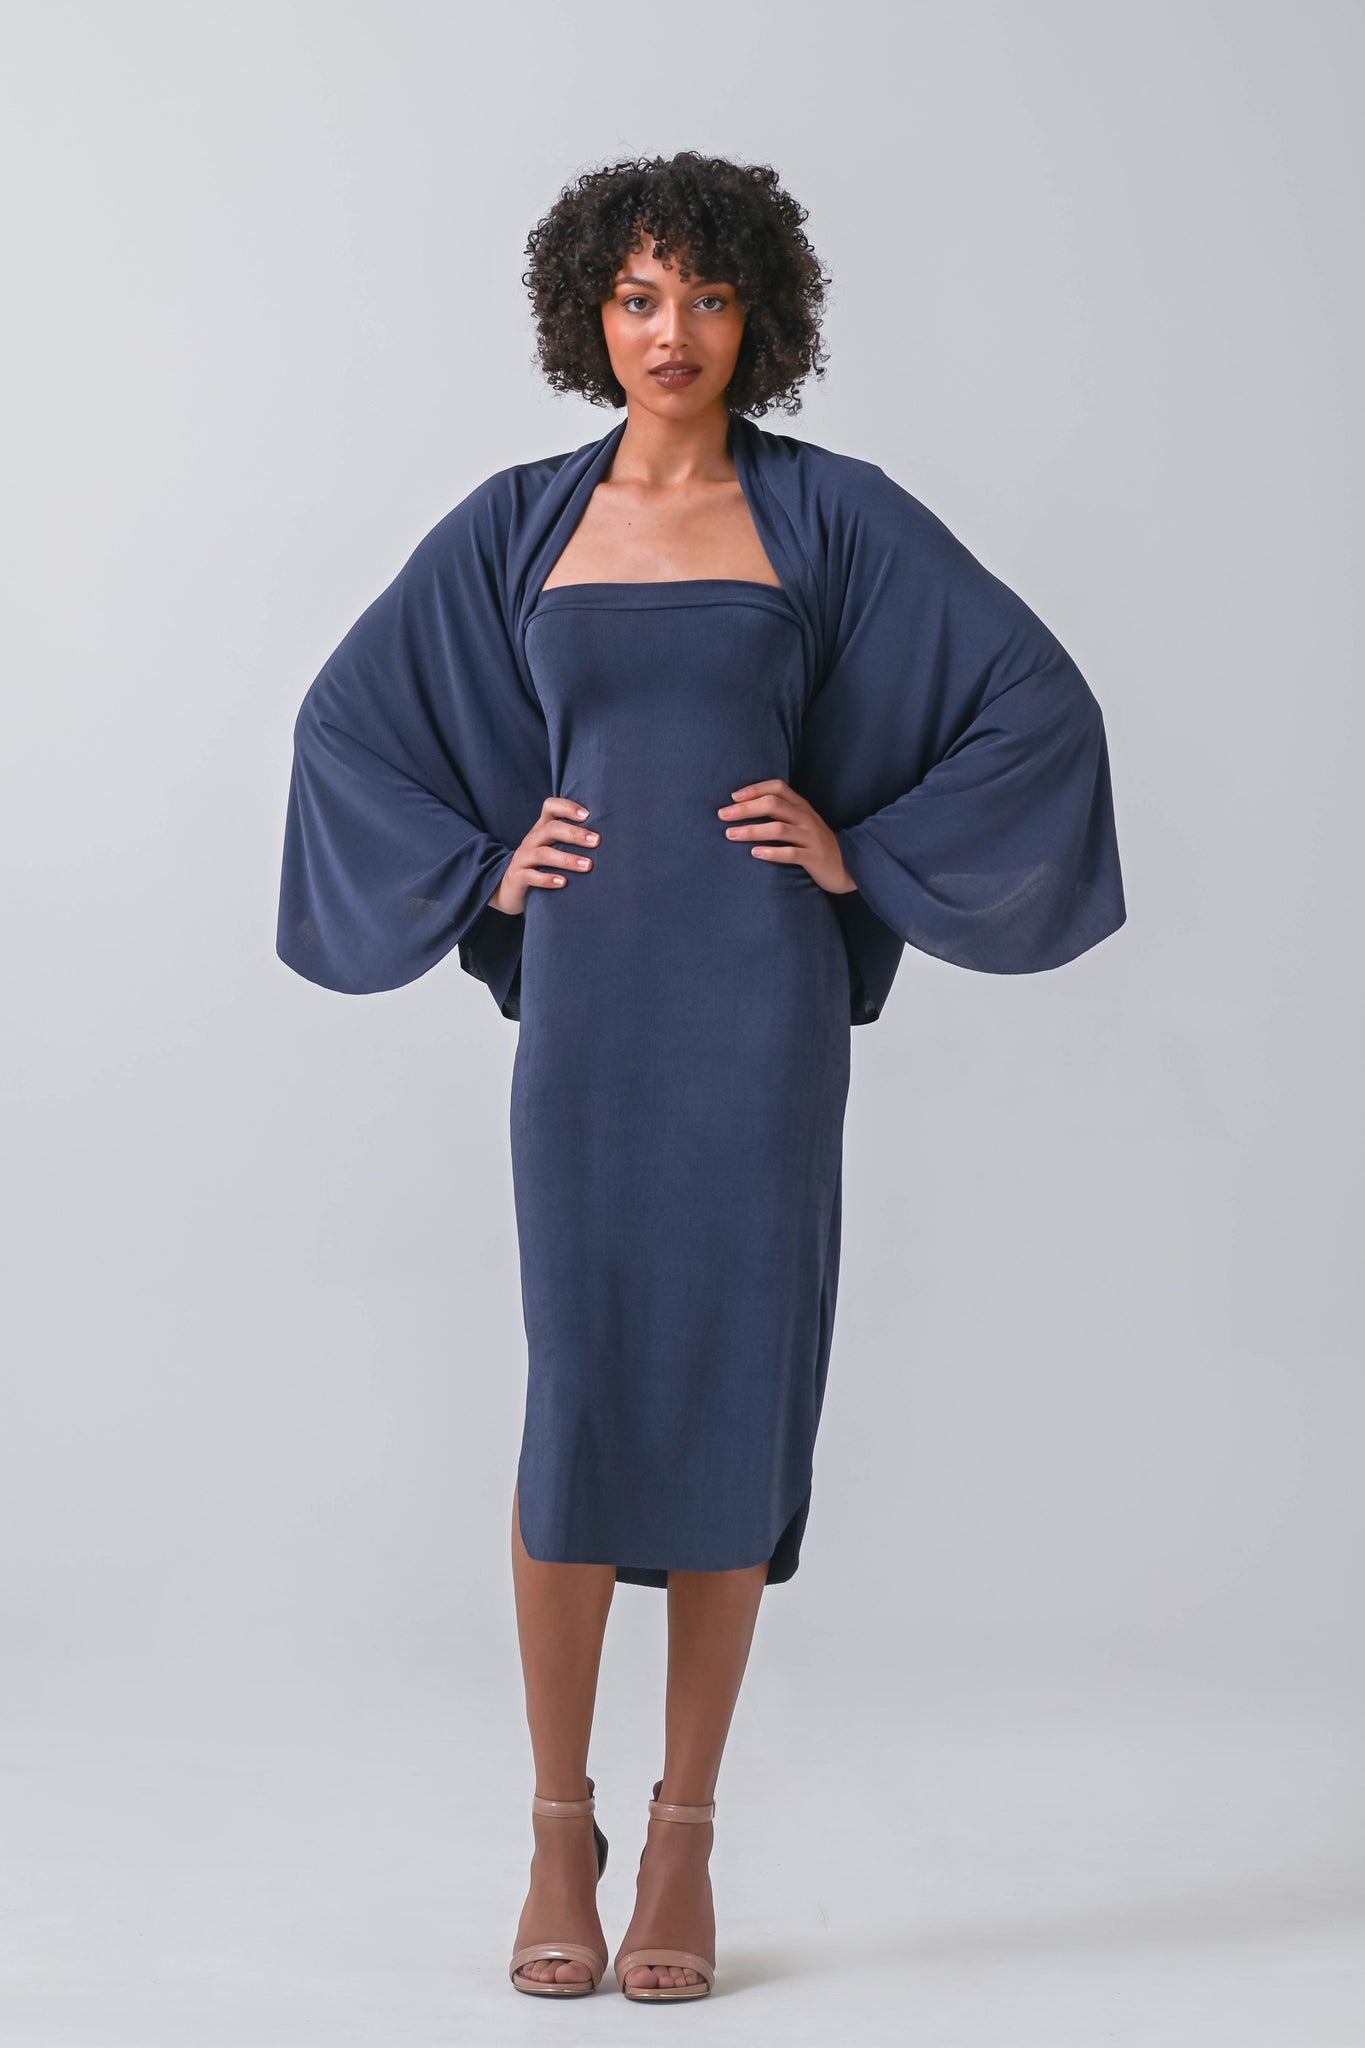 ALSLIAO Womens Sexy Slim Basic Sleeveless Tank Dress Soft Stretch Wrinkled  Casual Dress Blue XL 